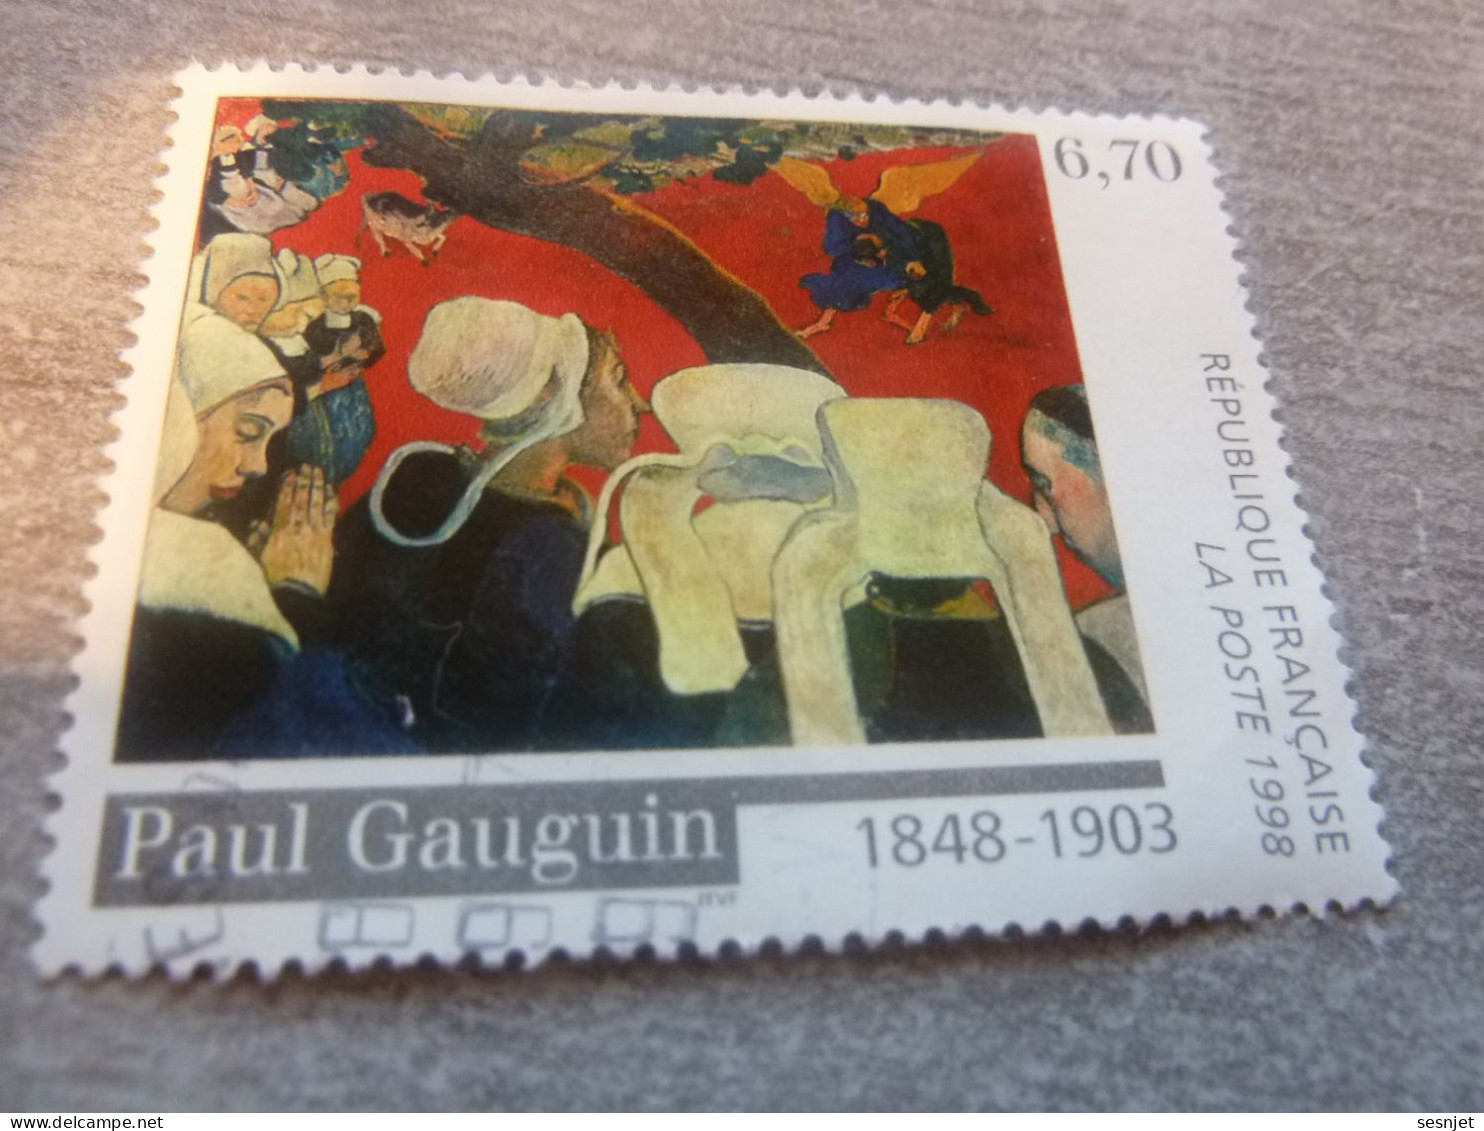 Paul Gauguin (1848-1903) Vision Après Le Sermon - 6f.70 - Yt 3207 - Multicolore - Oblitéré - Année 1998 - - Used Stamps